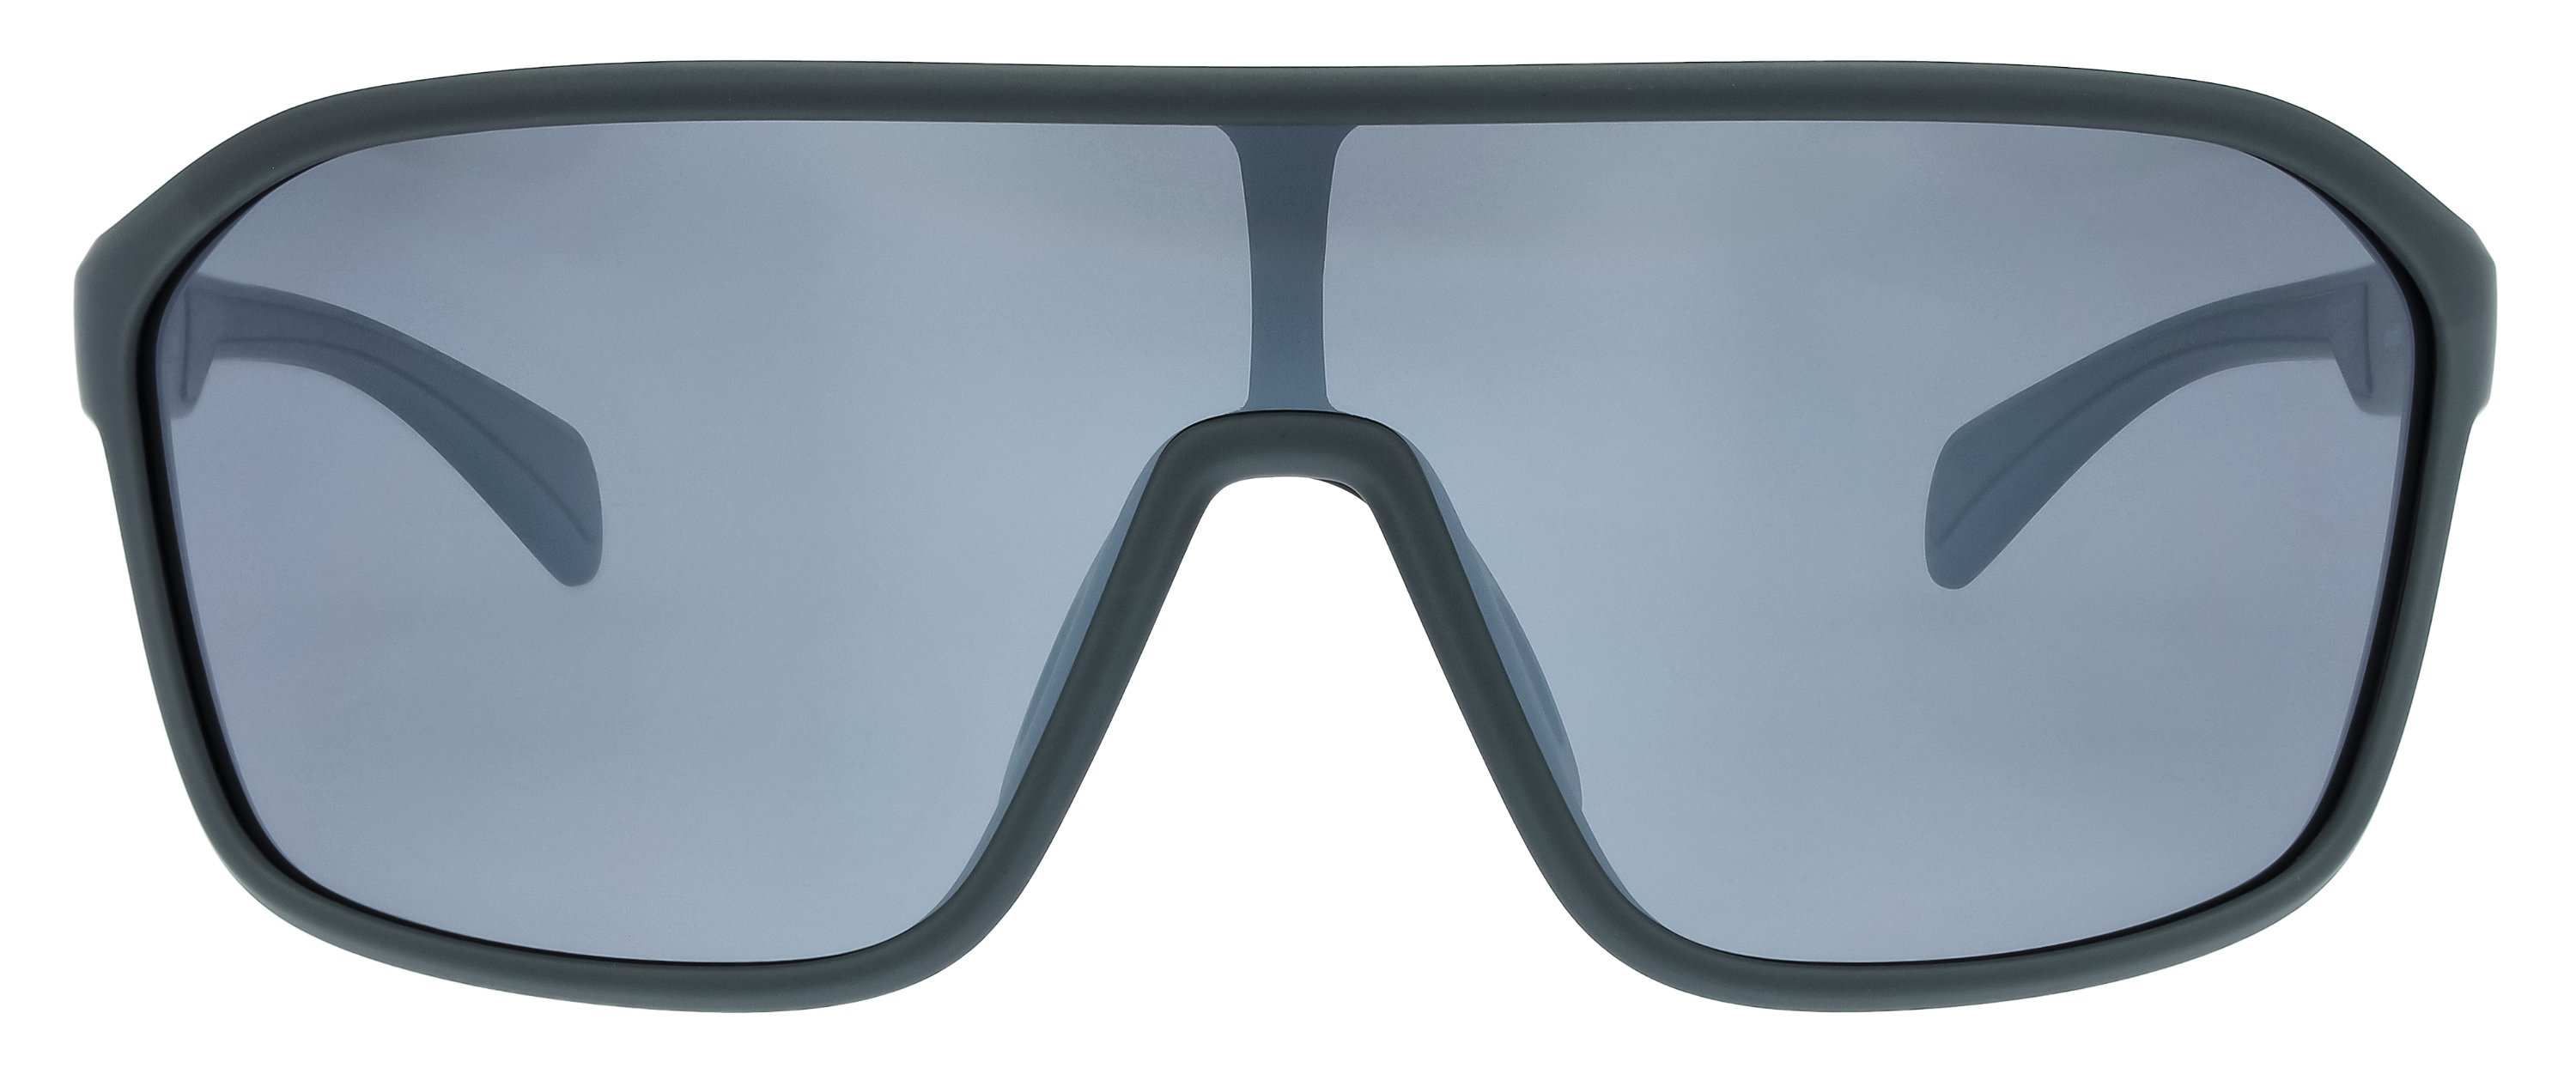 Das Bild zeigt die Sonnenbrille 721221 von der Marke Abele Optik in grau.